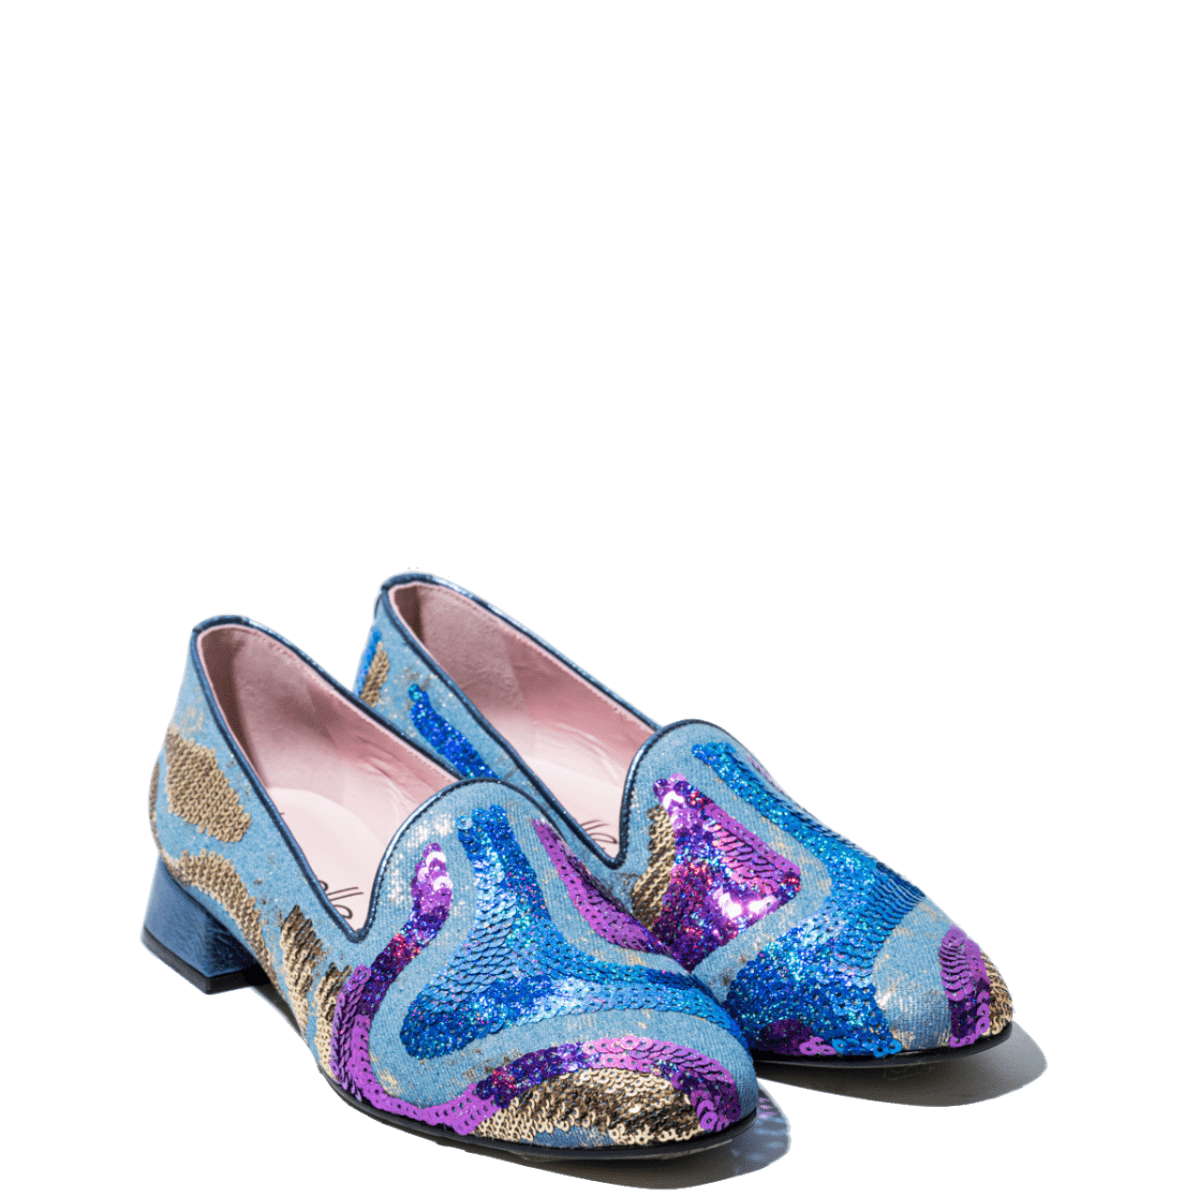 Pantofolina Le Gazzelle Paillettes Stella Cobalt - Le Gazzelle - Calzature Savorè